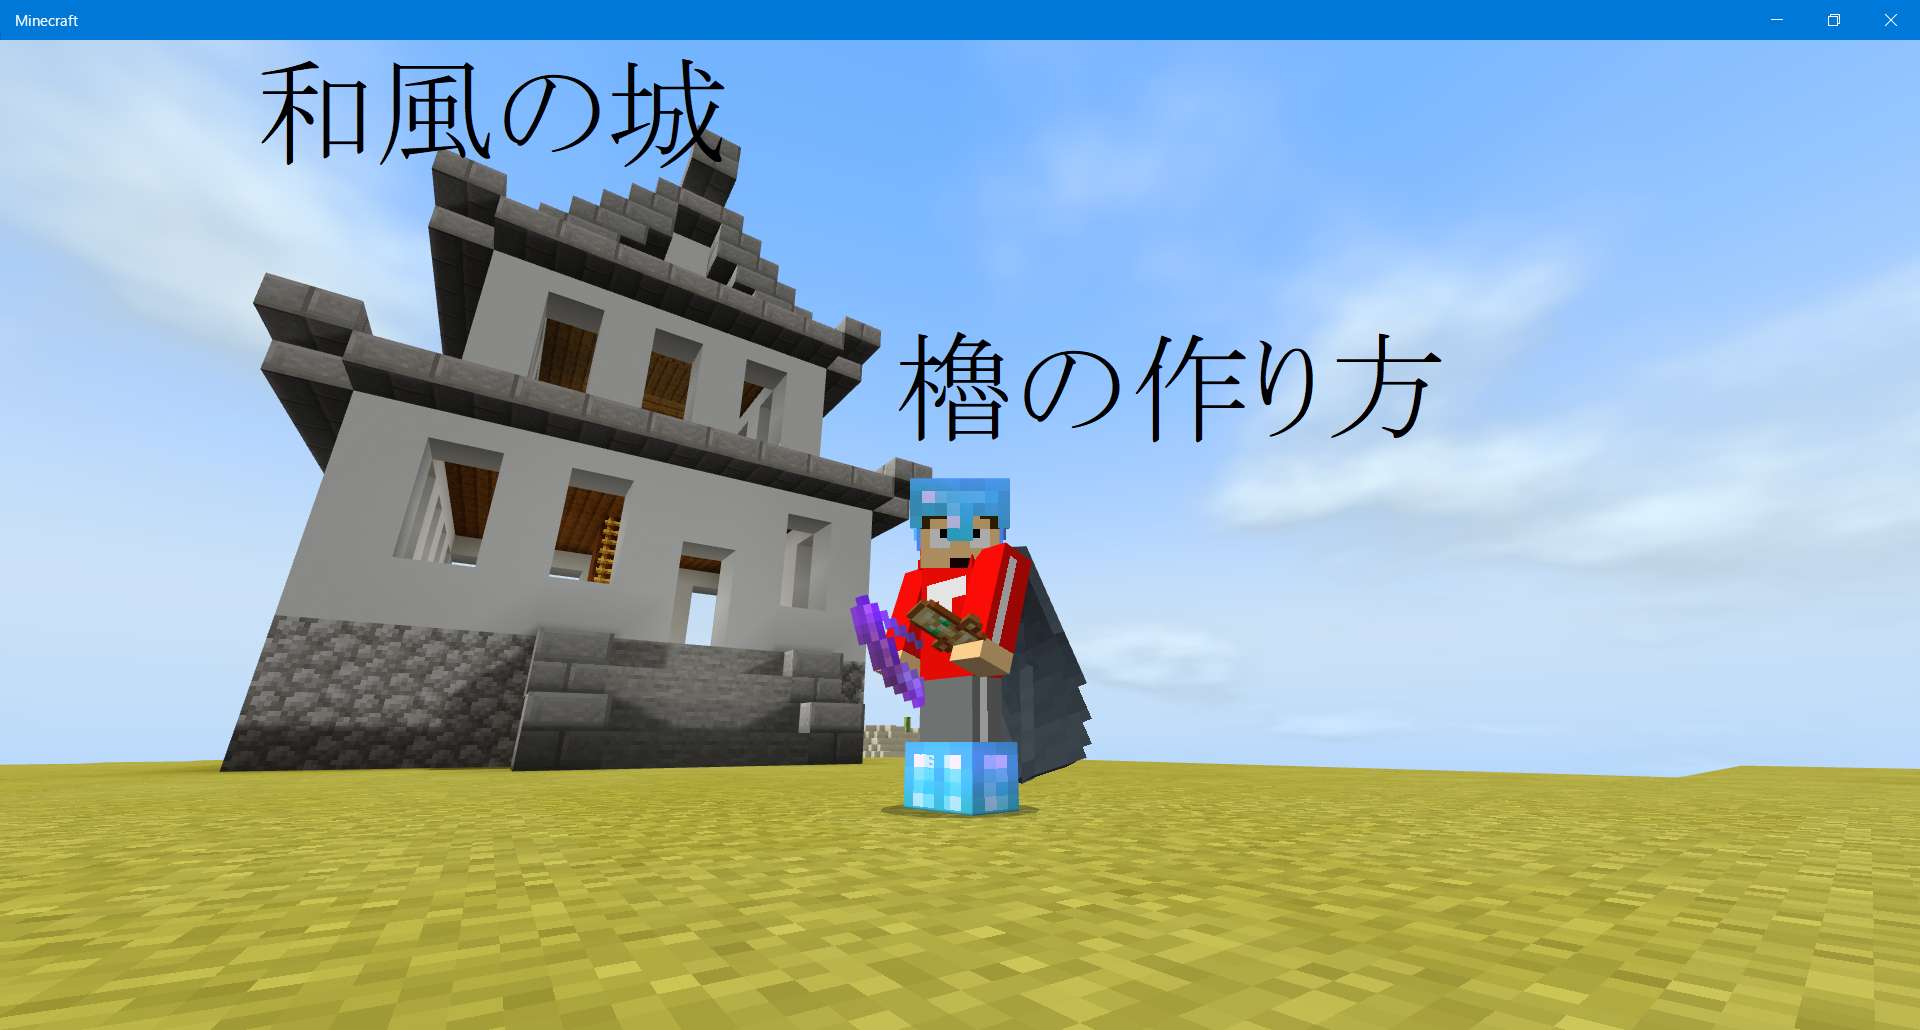 日本の城 櫓の作り方 とくべえくら とくべえのマイクラブログ